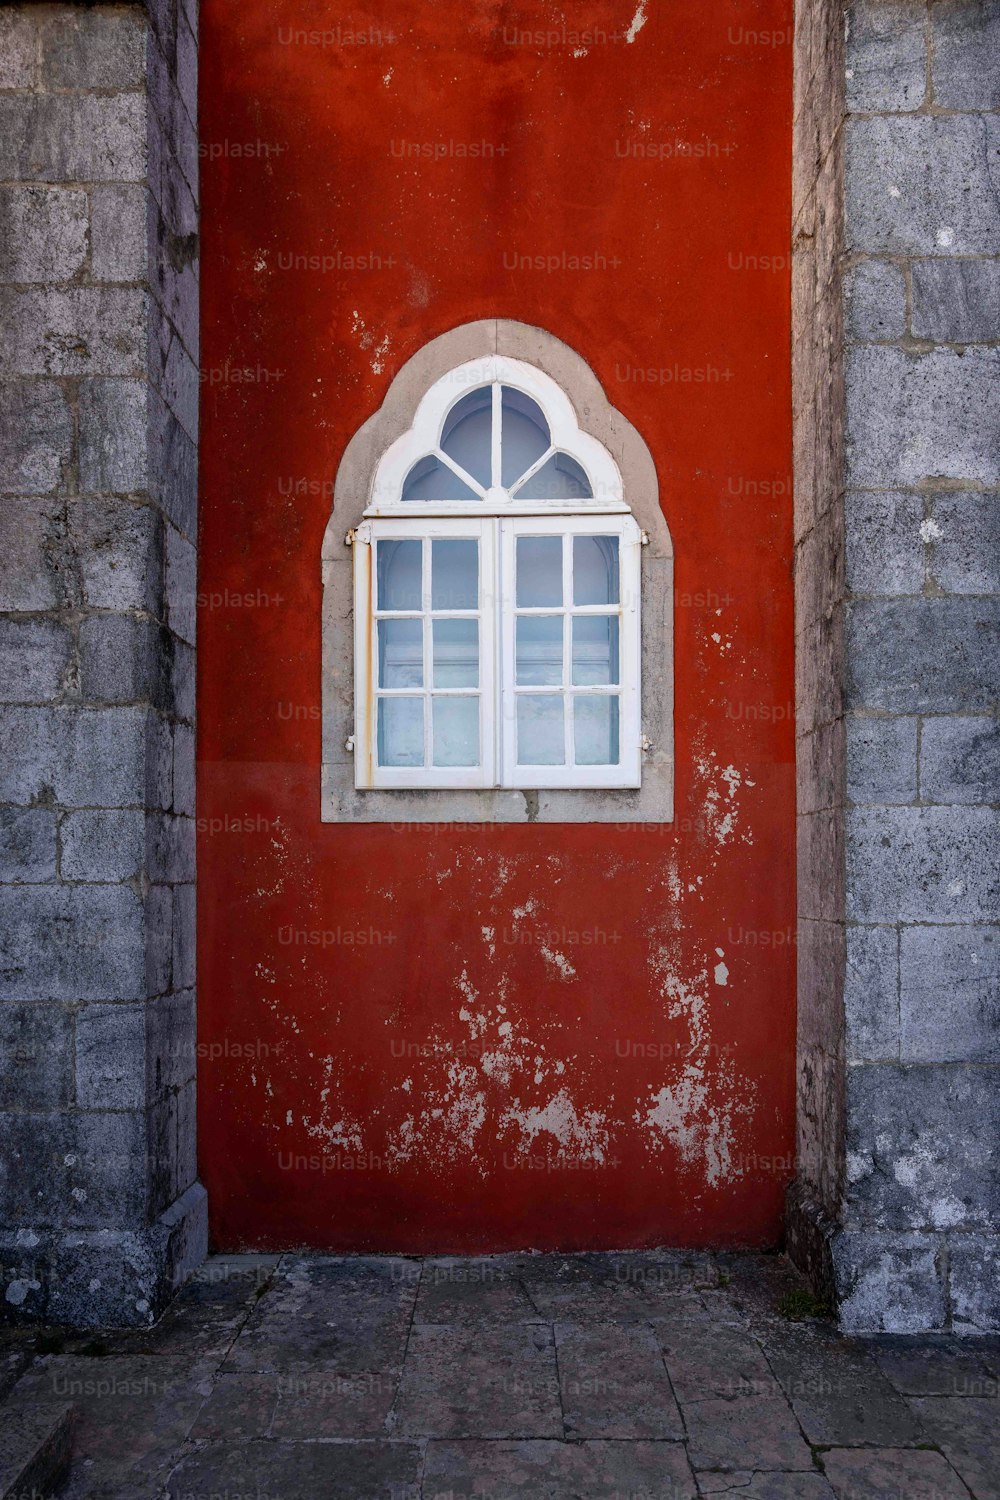 eine rote Wand mit einem weißen Fenster darauf